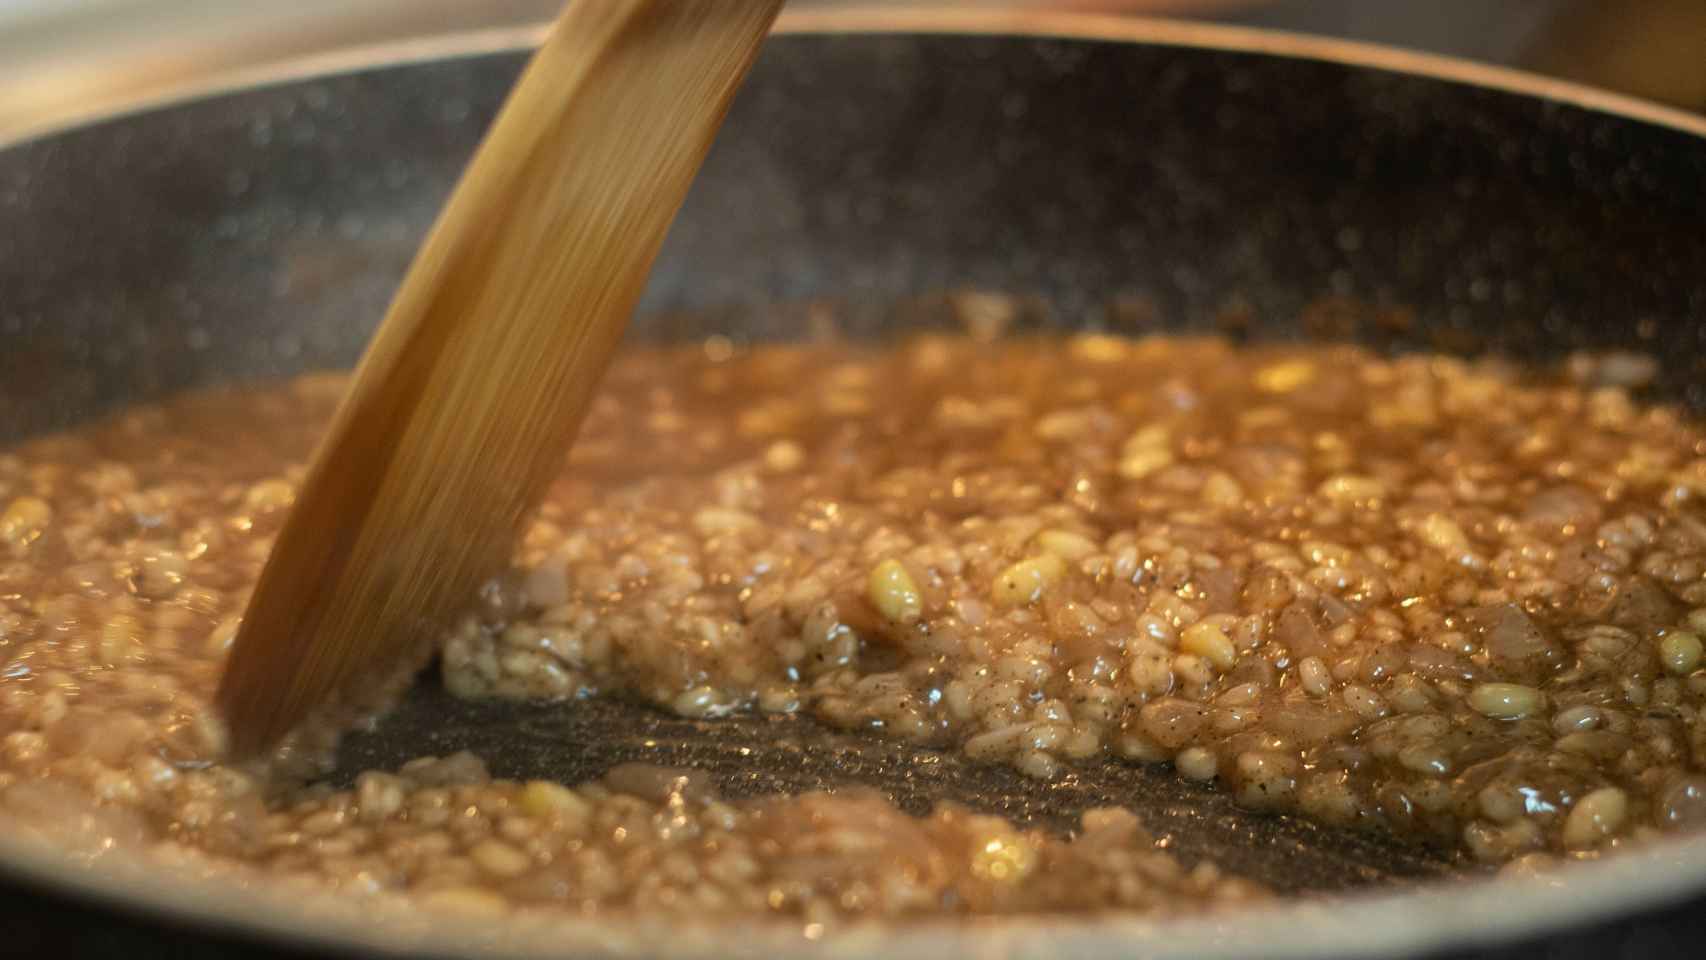 Después de cocer el arroz se hace un risotto con el resto de los ingredientes.